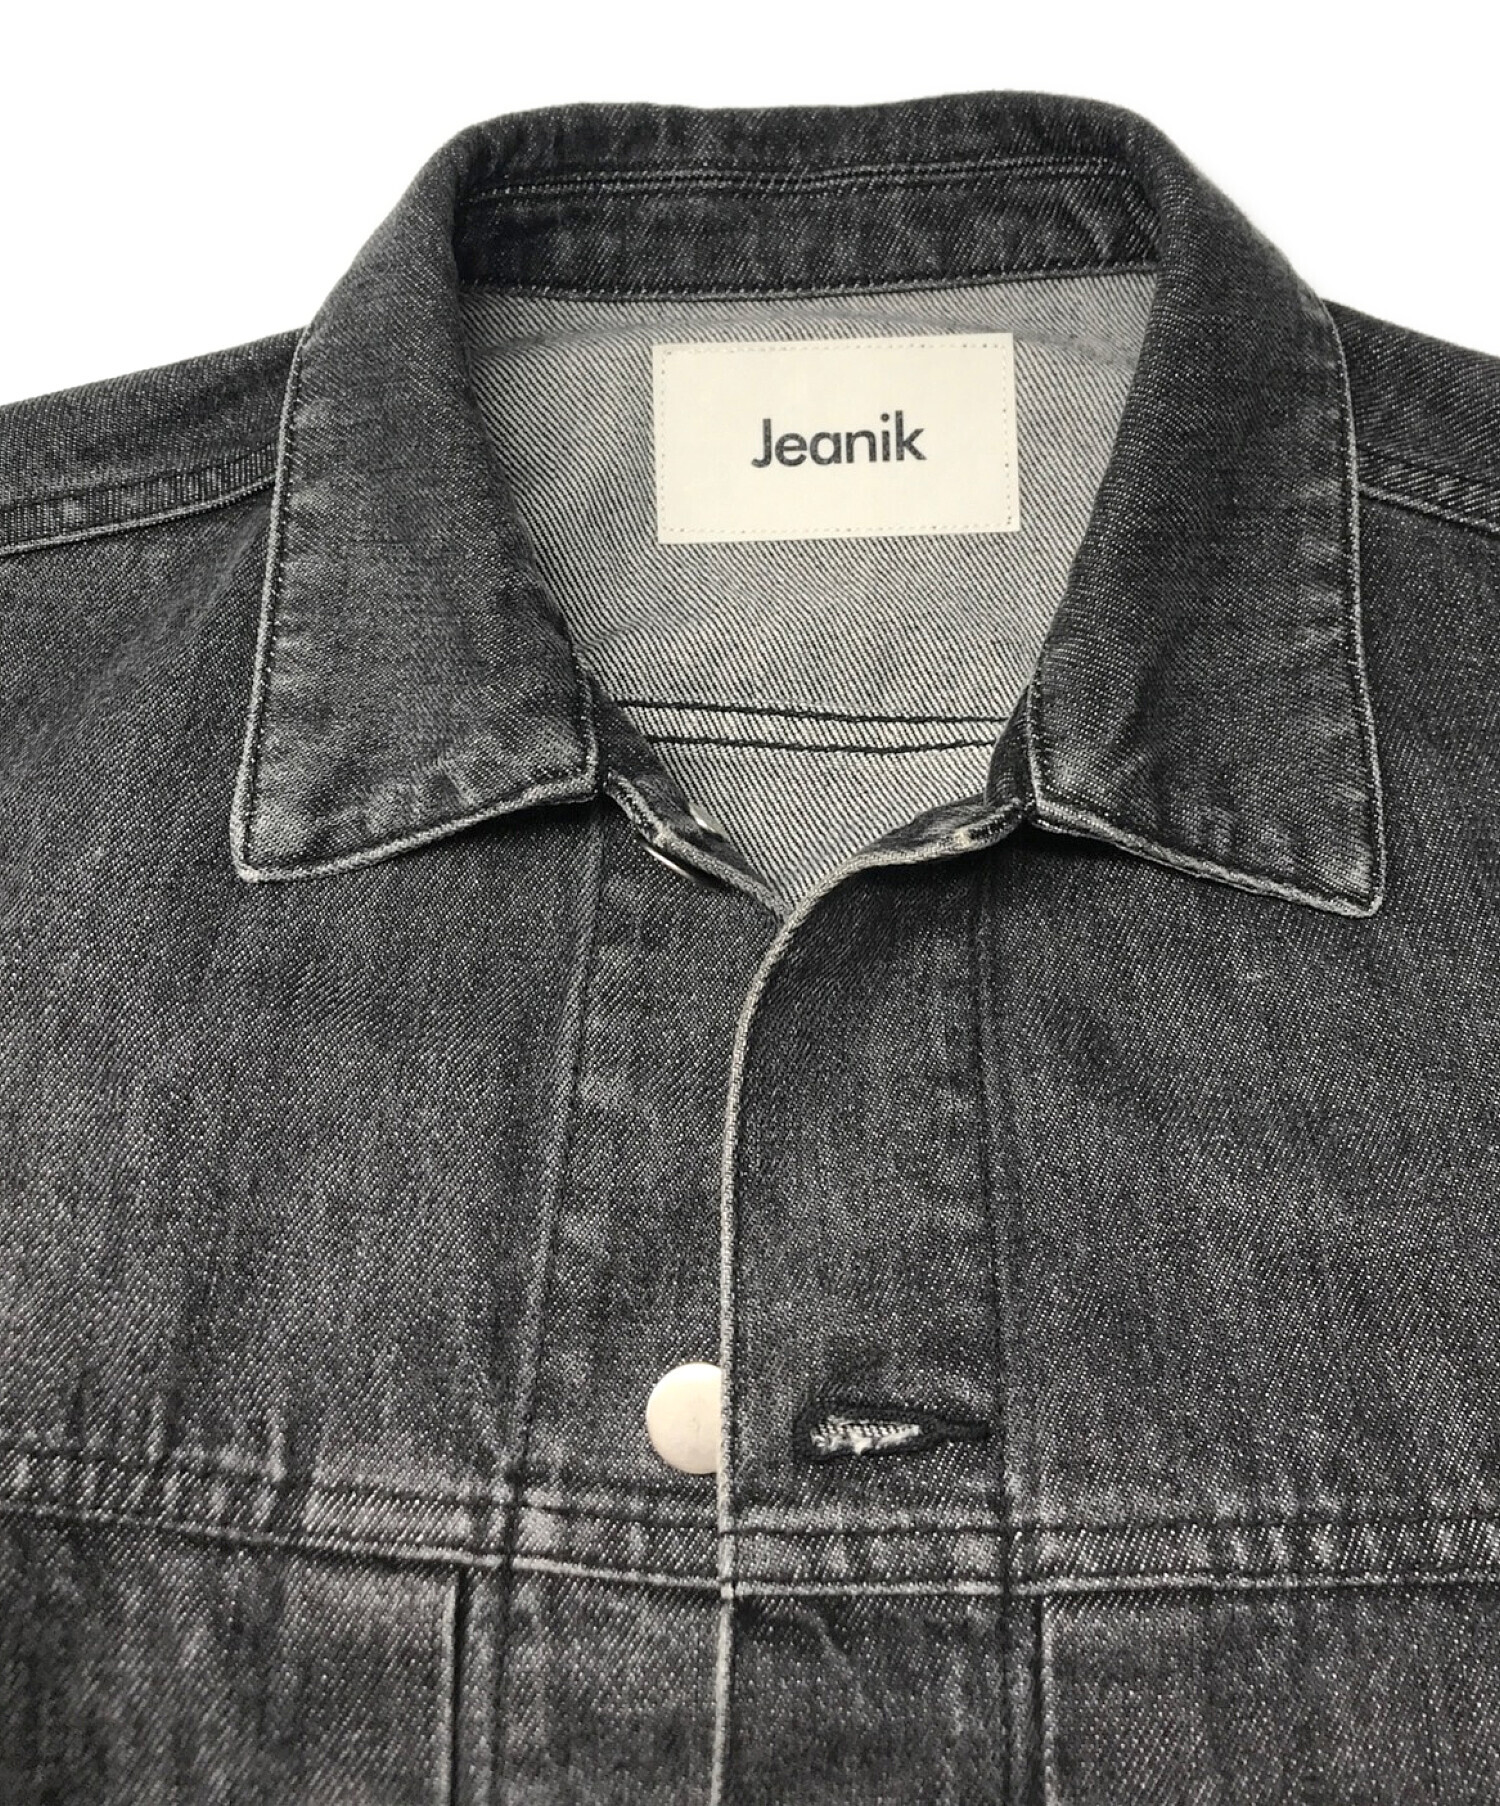 Jeanik (ジーニック) 2ndタイプ ワンウォッシュブラックデニムジャケット グレー サイズ:S